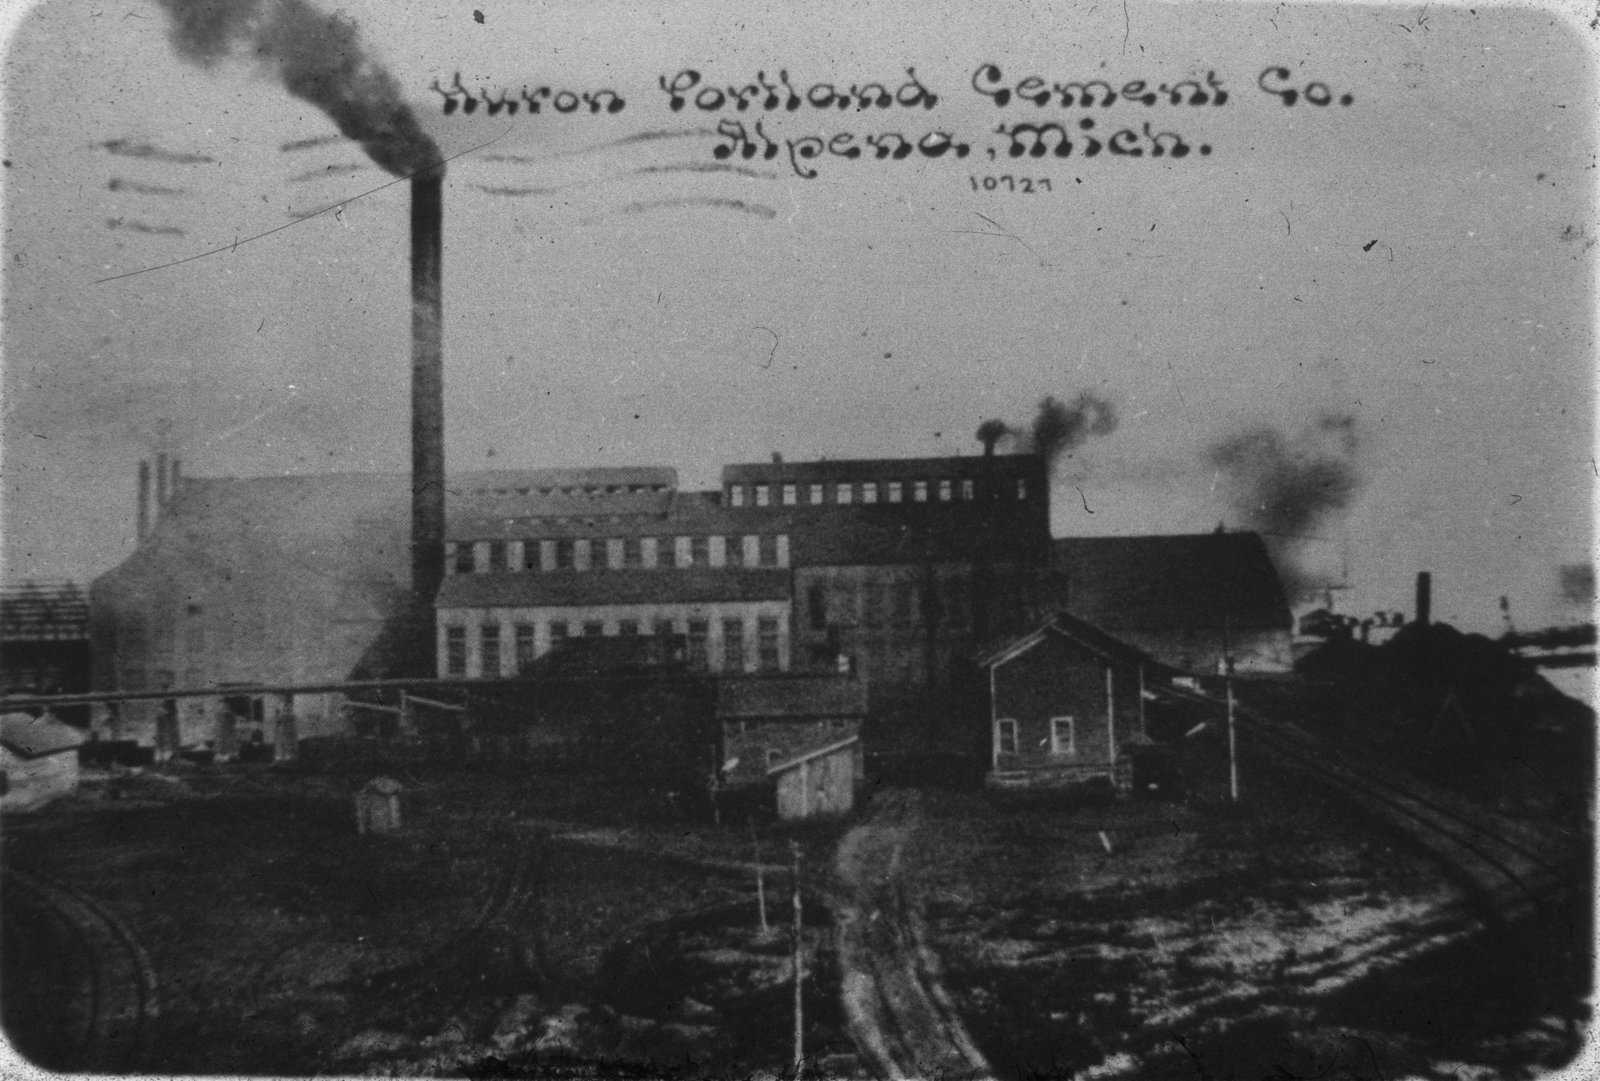 Huron Portland Cement Company: Northeast Michigan Oral History Archive